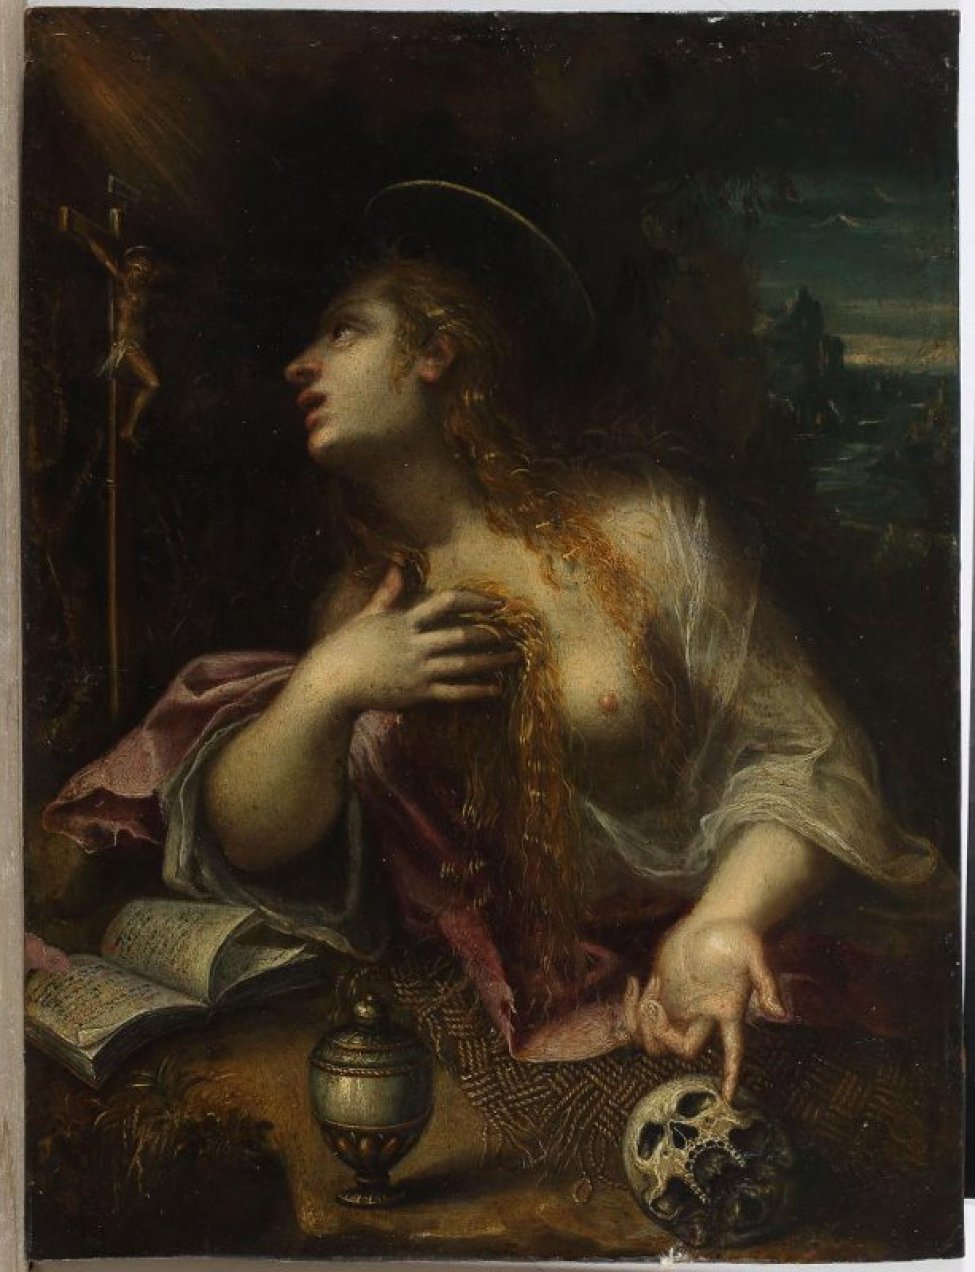 Изображена молодая женщина, сидящая за столом, с распущенными волосами, в белой одежде. Глаза обращены на небольшое распятие, стоящее на столе. Левой рукой она показывает на череп, лежащий на столе, правая рука прижата к груди.